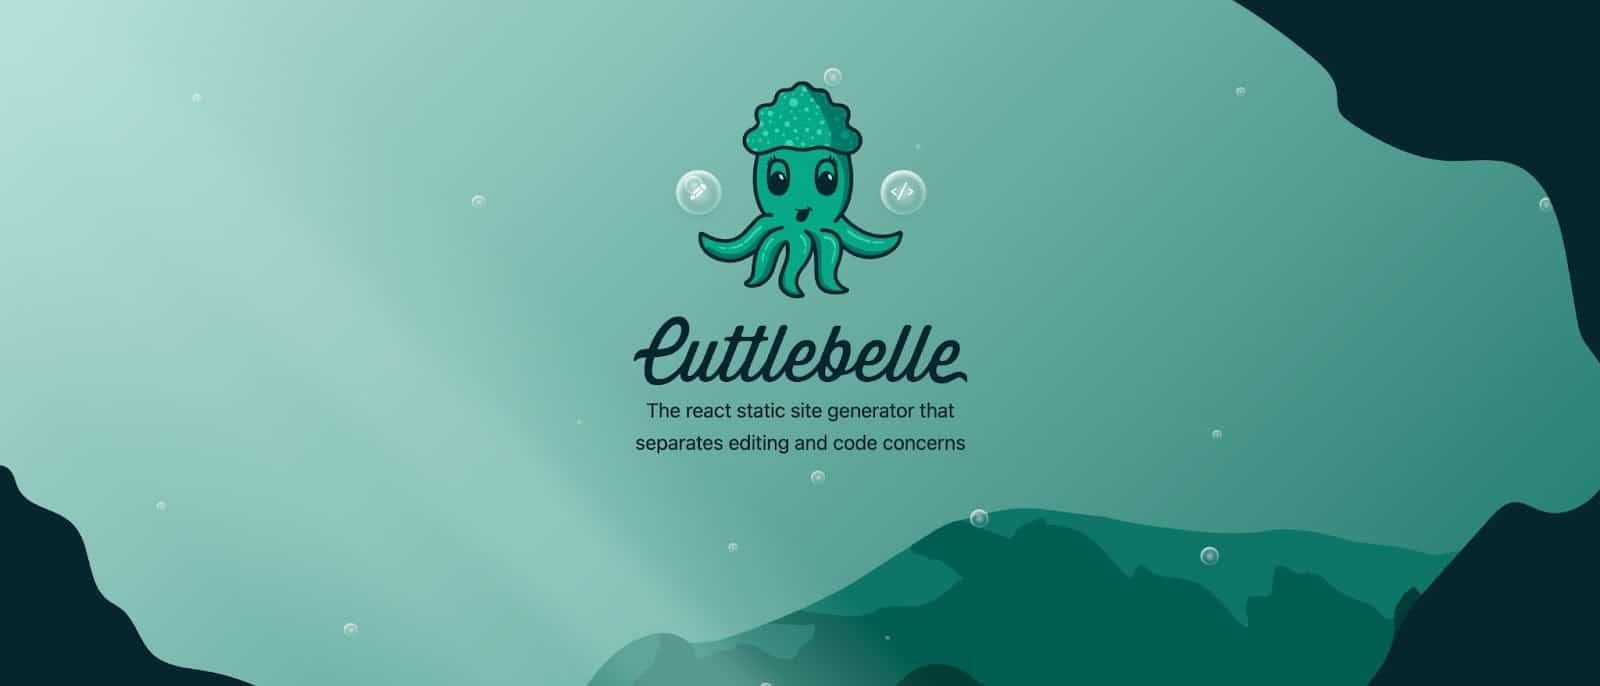 The Cuttlebelle 網站主頁